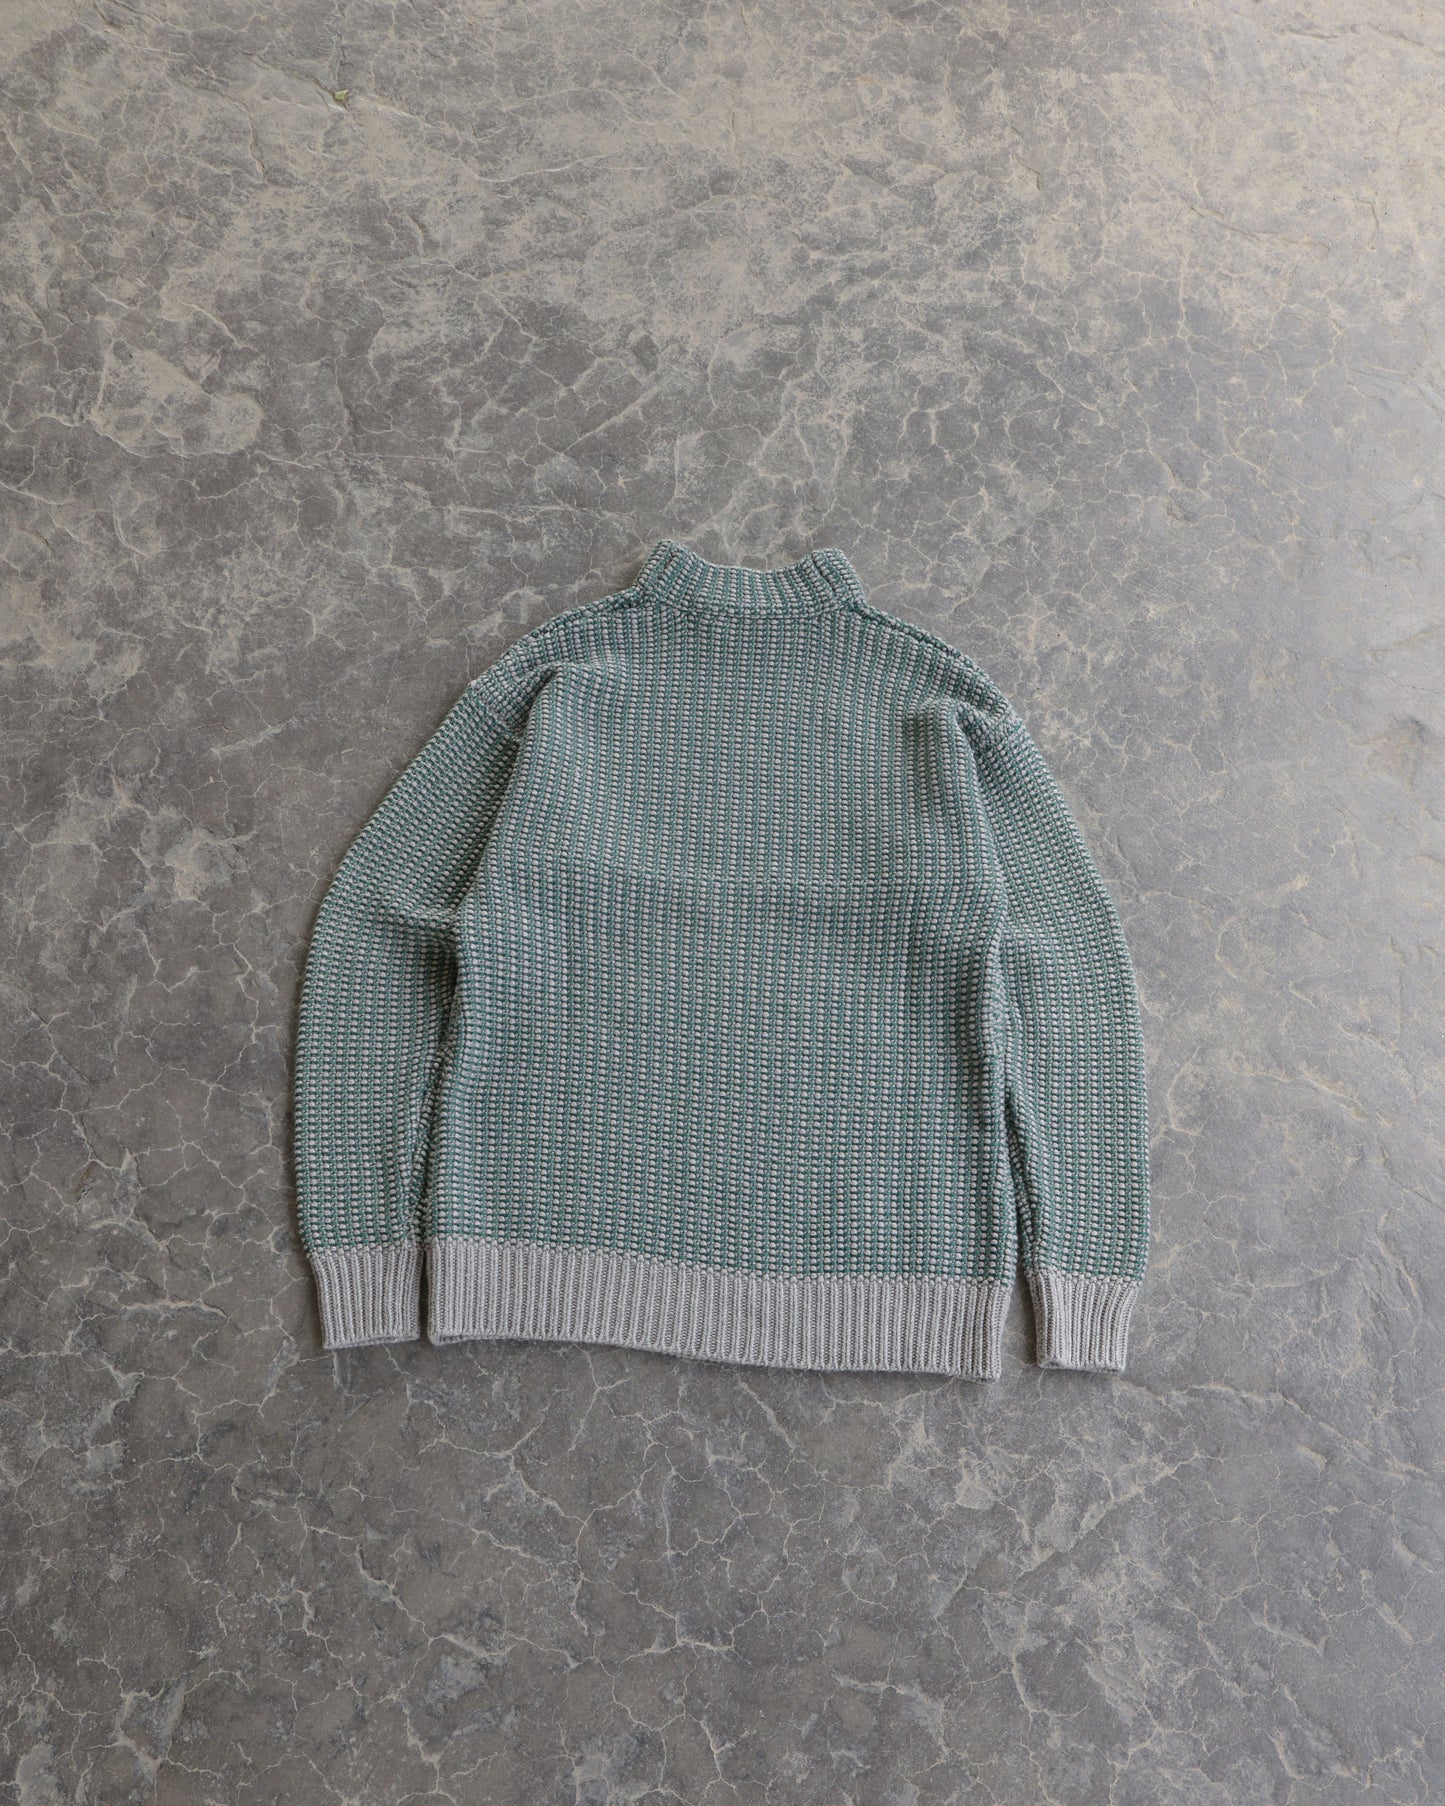 Modern Alexander Wang Turtleneck Sweater - M